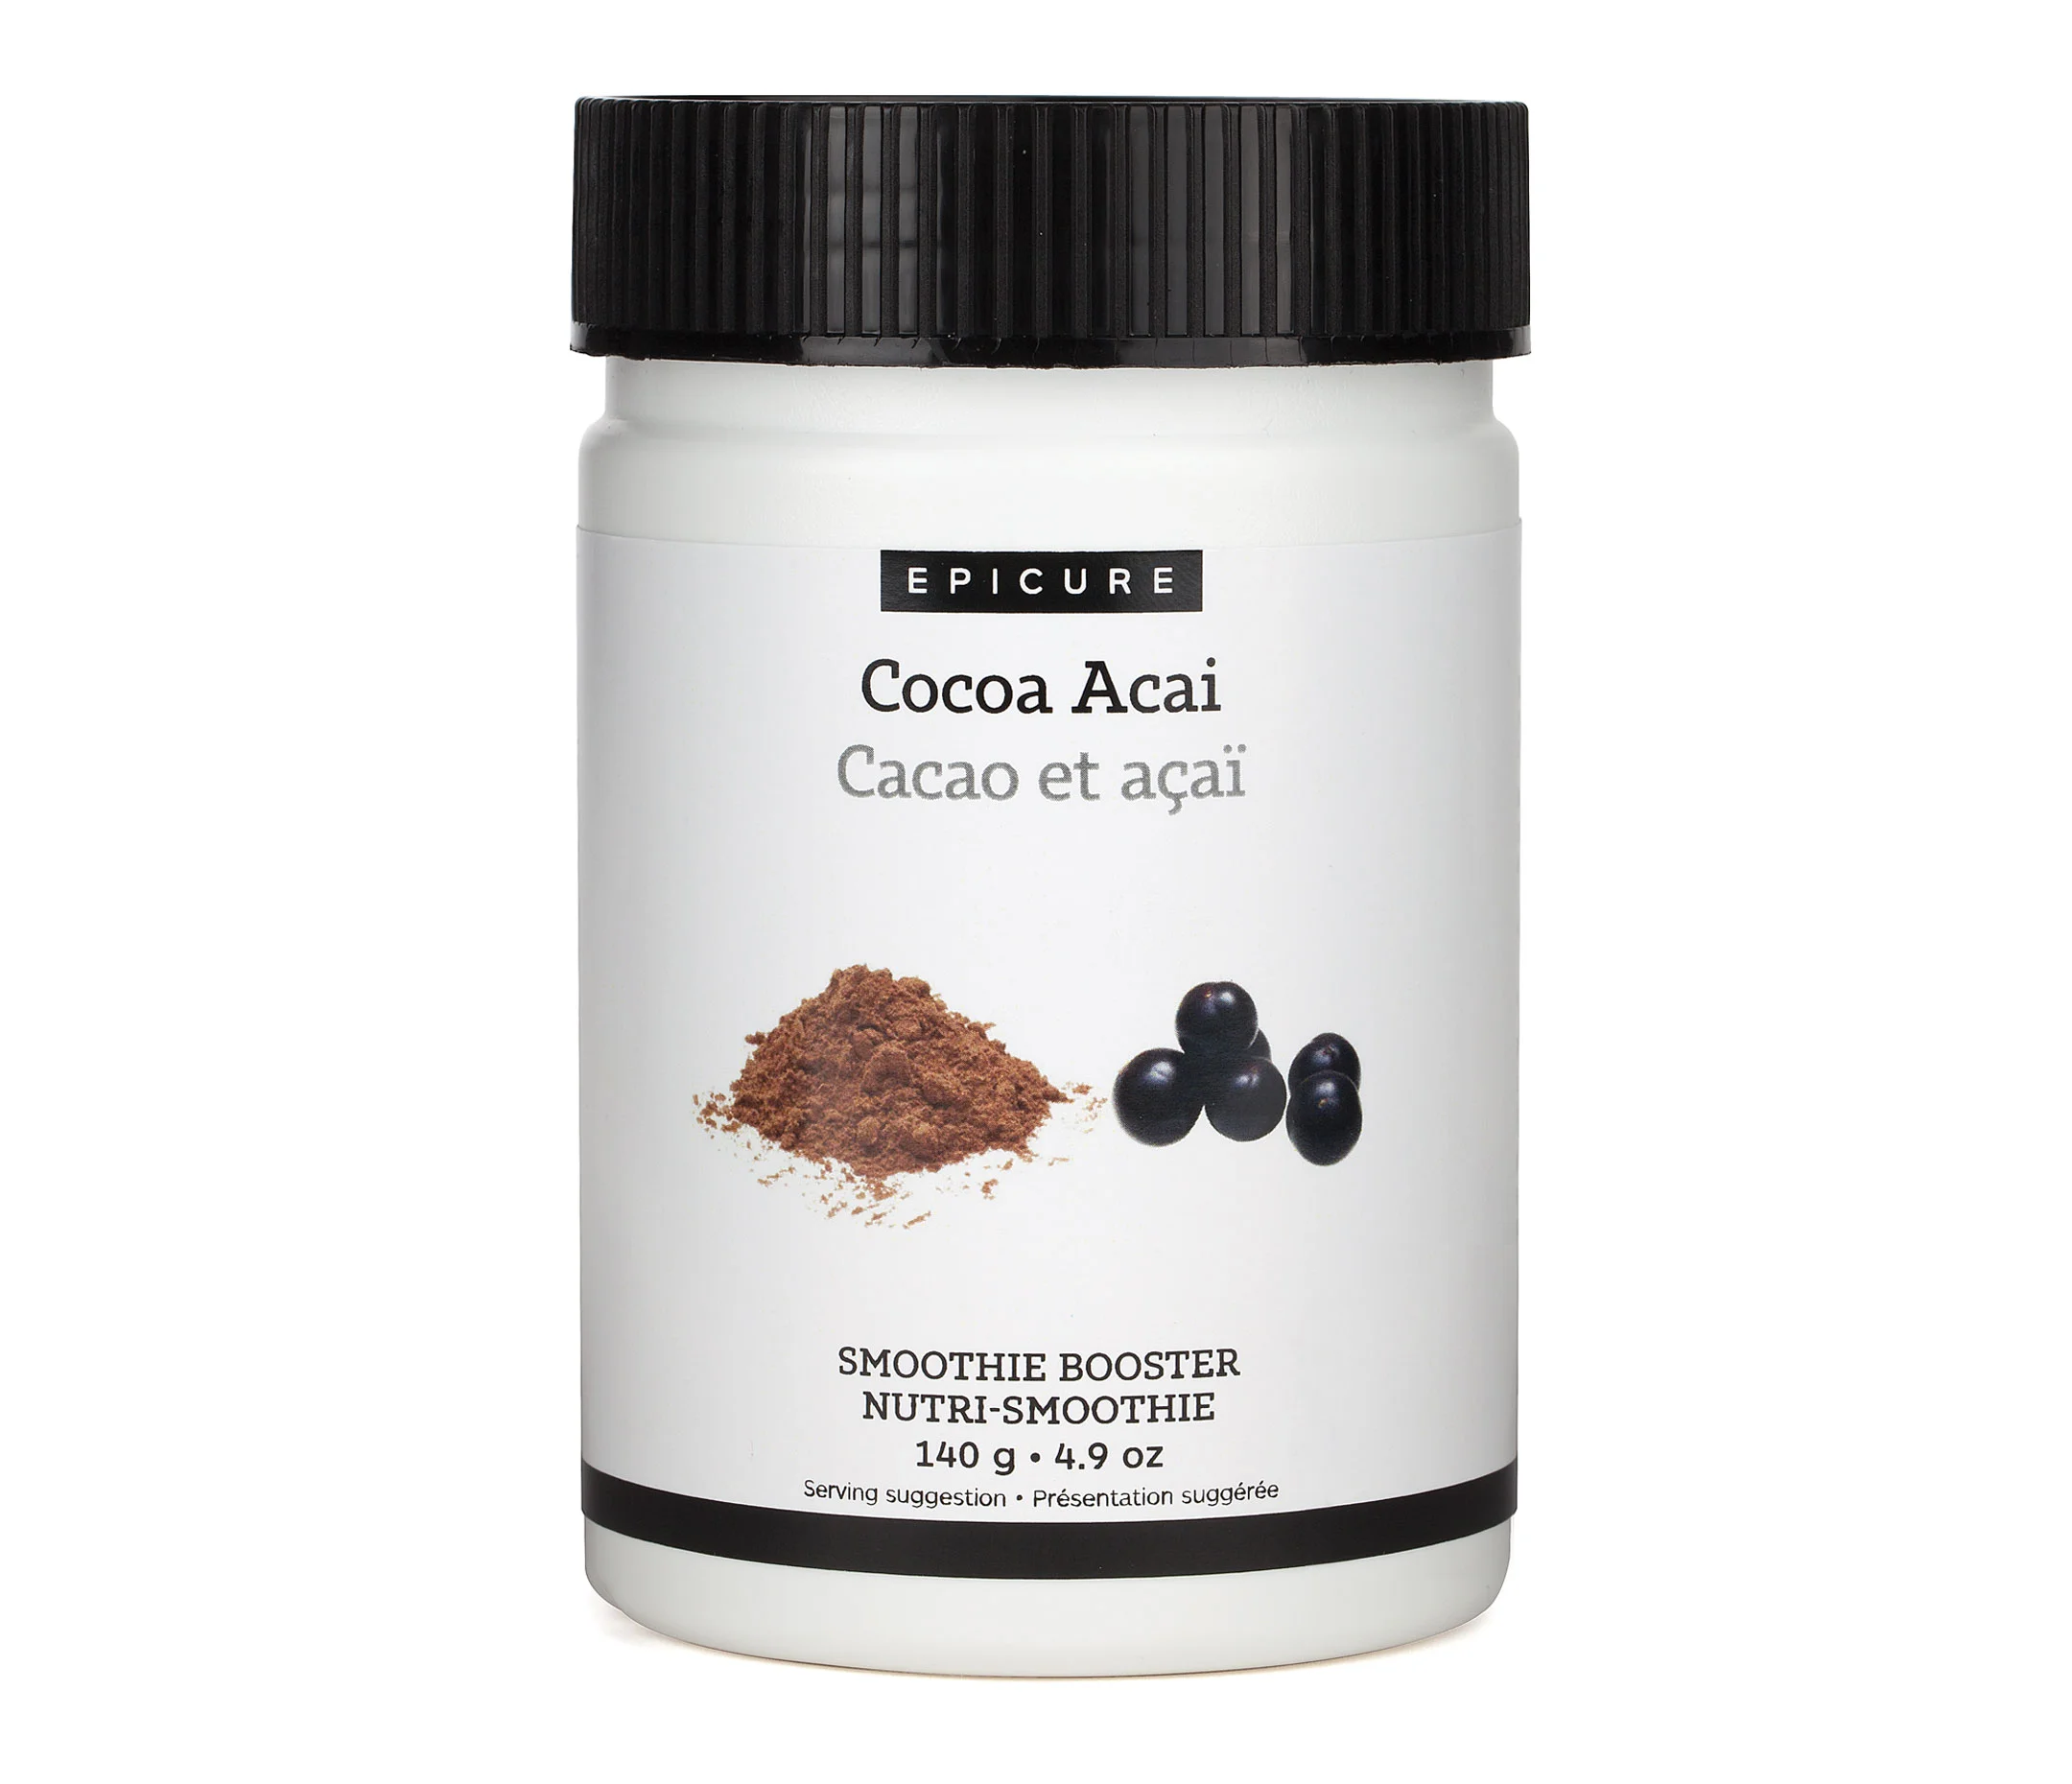 Cocoa Açai Smoothie Booster